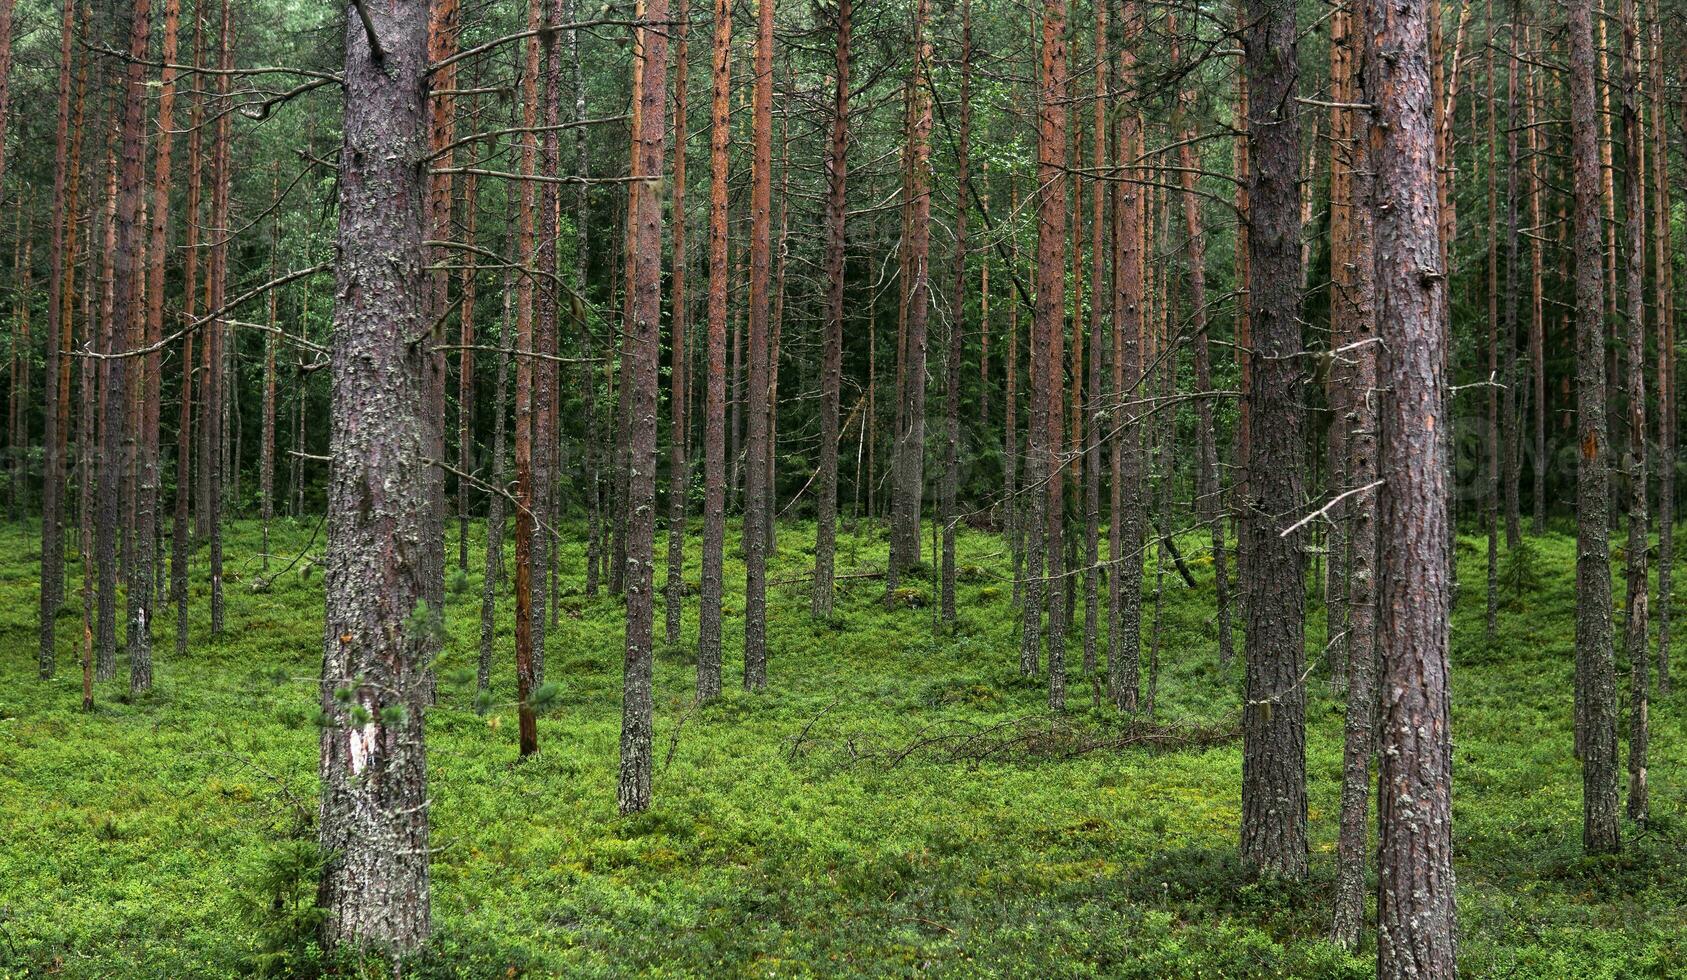 naturlig landskap, tall boreal skog med mossa undervegetation, barr- taiga foto